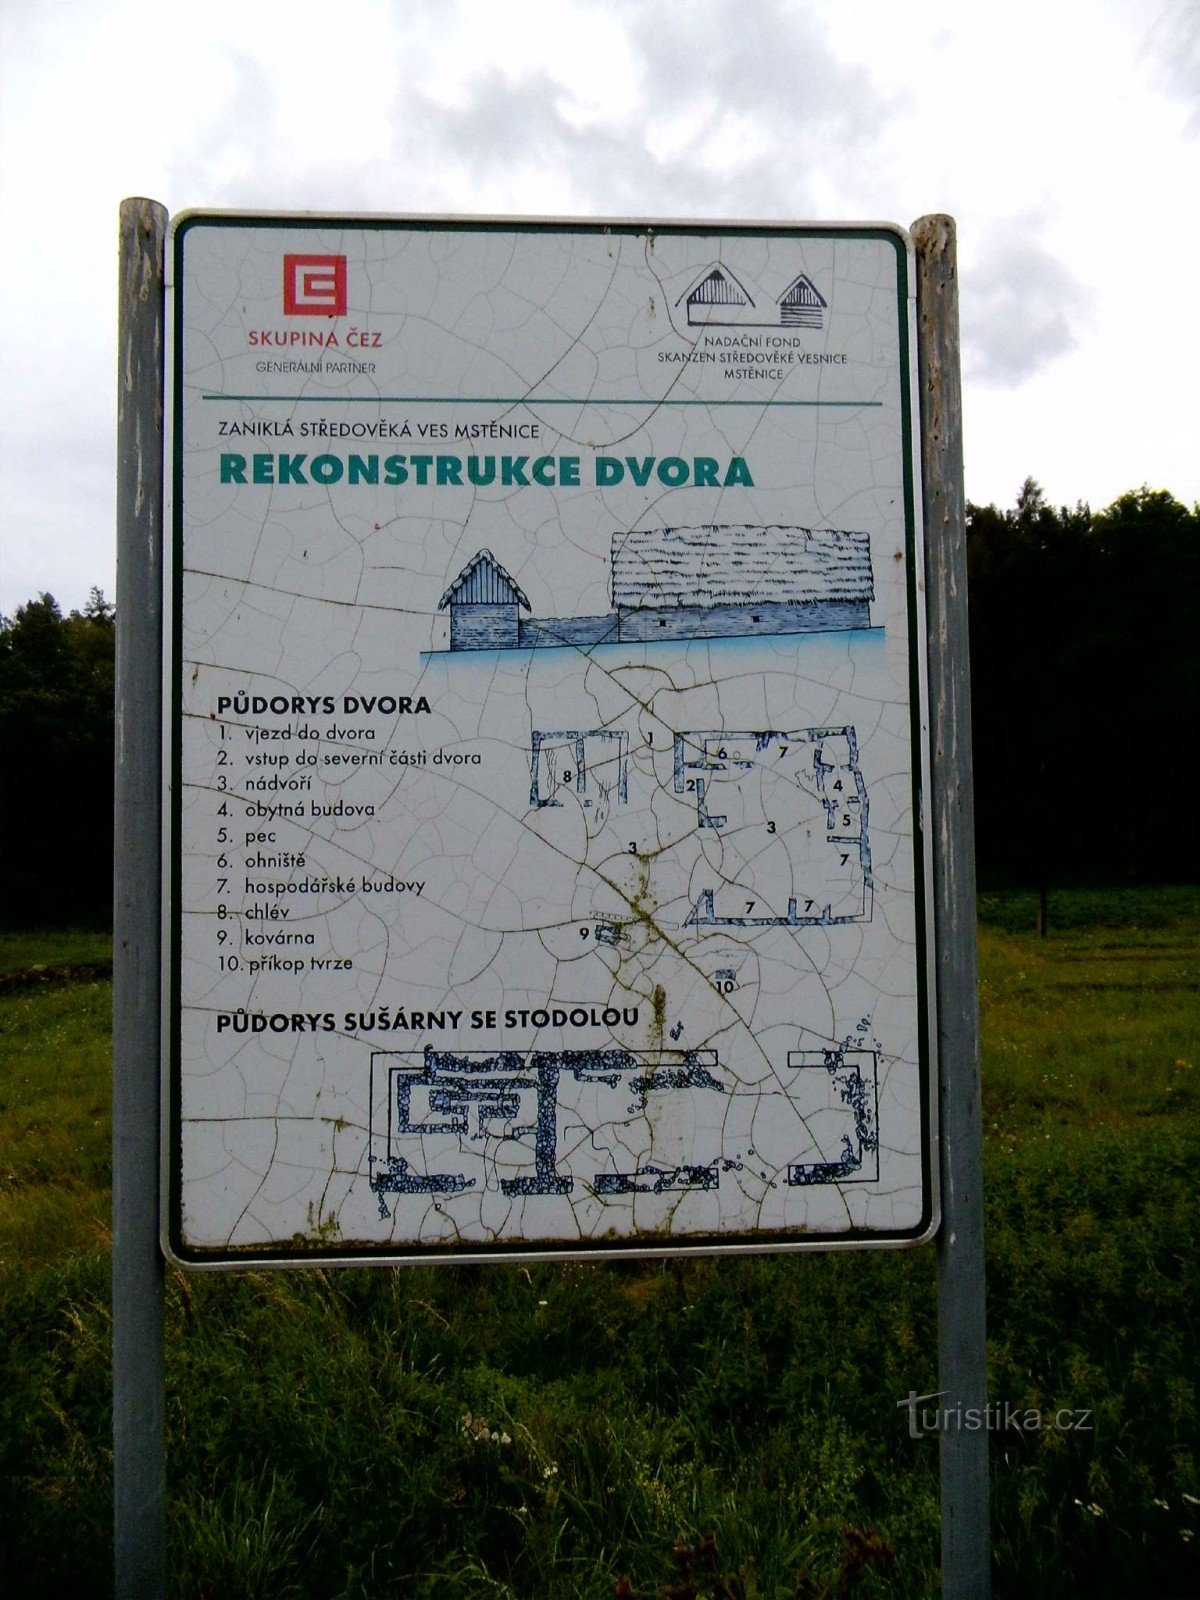 De la Hrotovice la Hrotovice prin așezarea defunctă Mstěnice